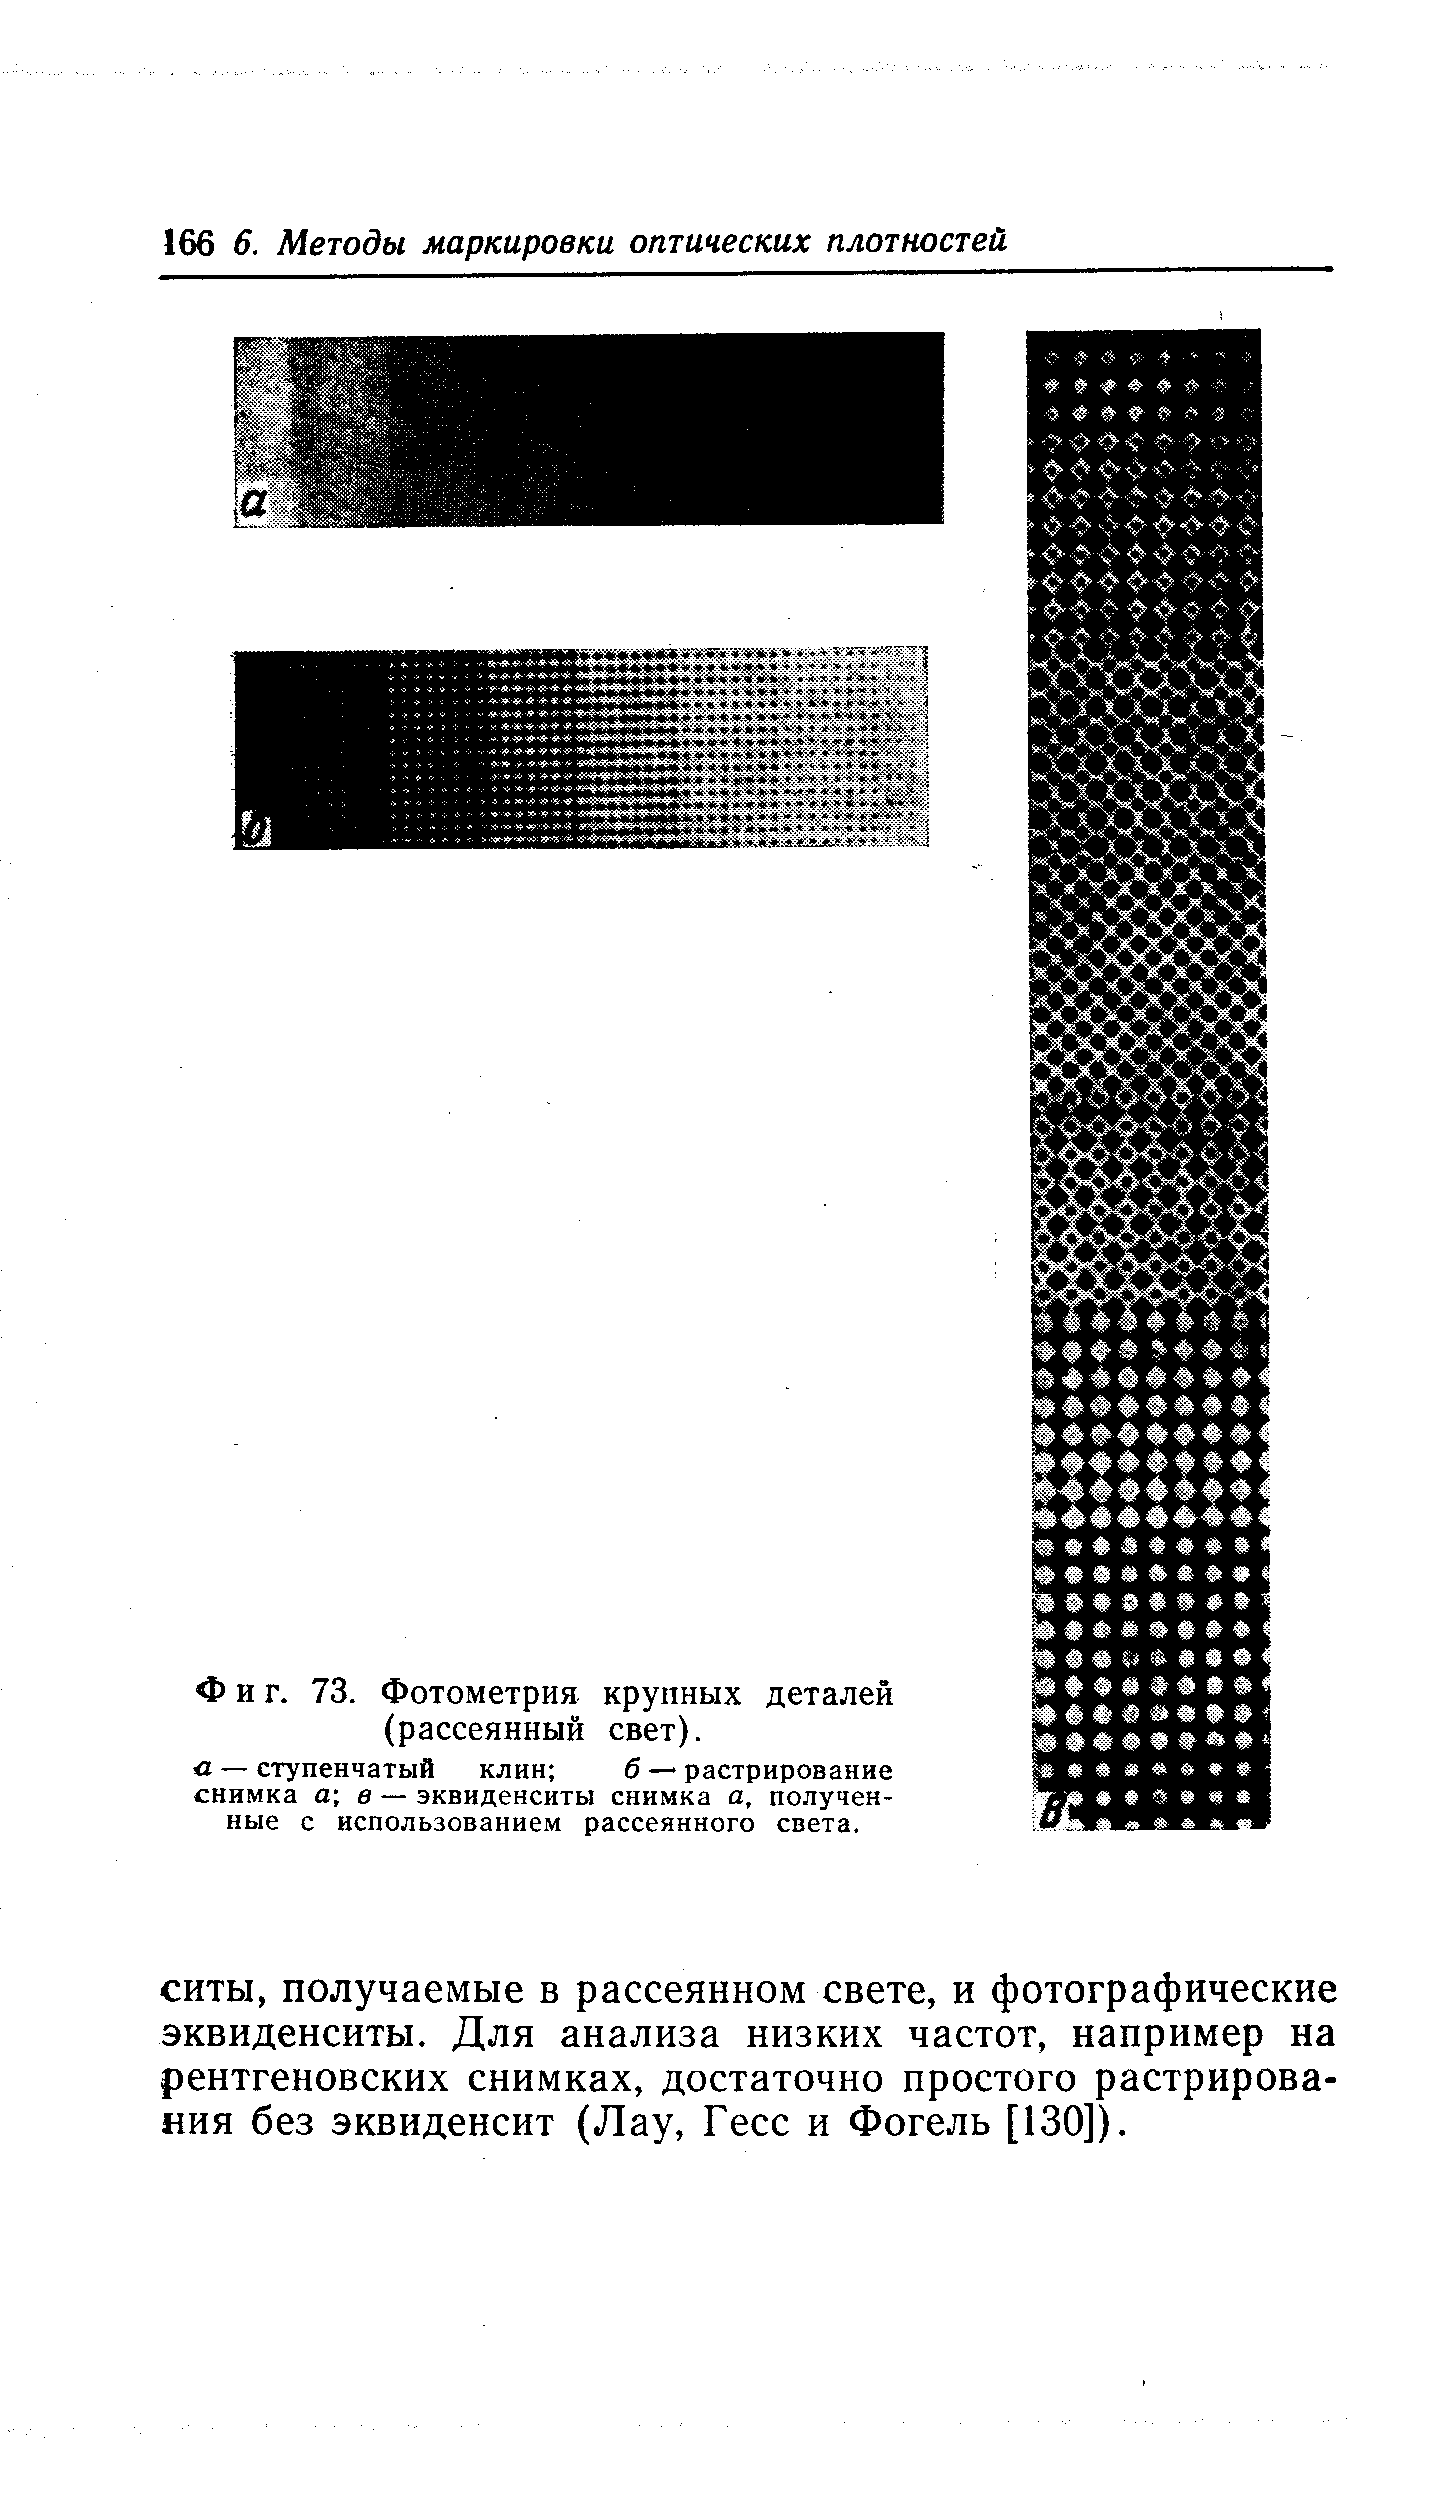 Фиг. 73. Фотометрия крупных деталей (рассеянный свет).
